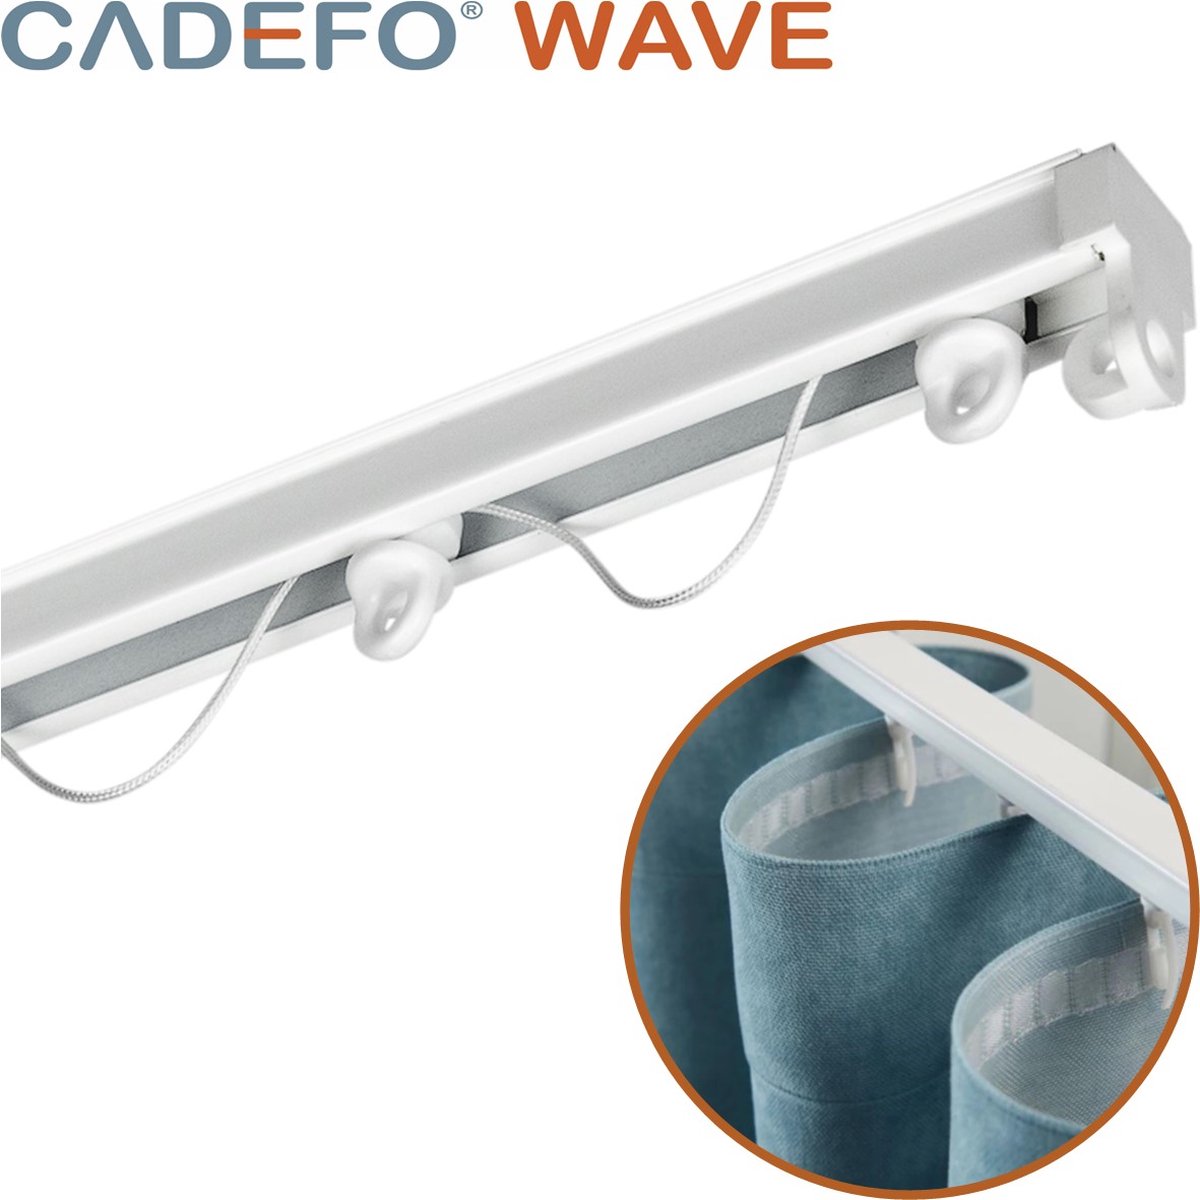 CADEFO WAVE (451 - 500 cm) Gordijnrails - Compleet op maat! - UIT 1 STUK - Leverbaar tot 6 meter - Plafondbevestiging - Lengte 456 cm